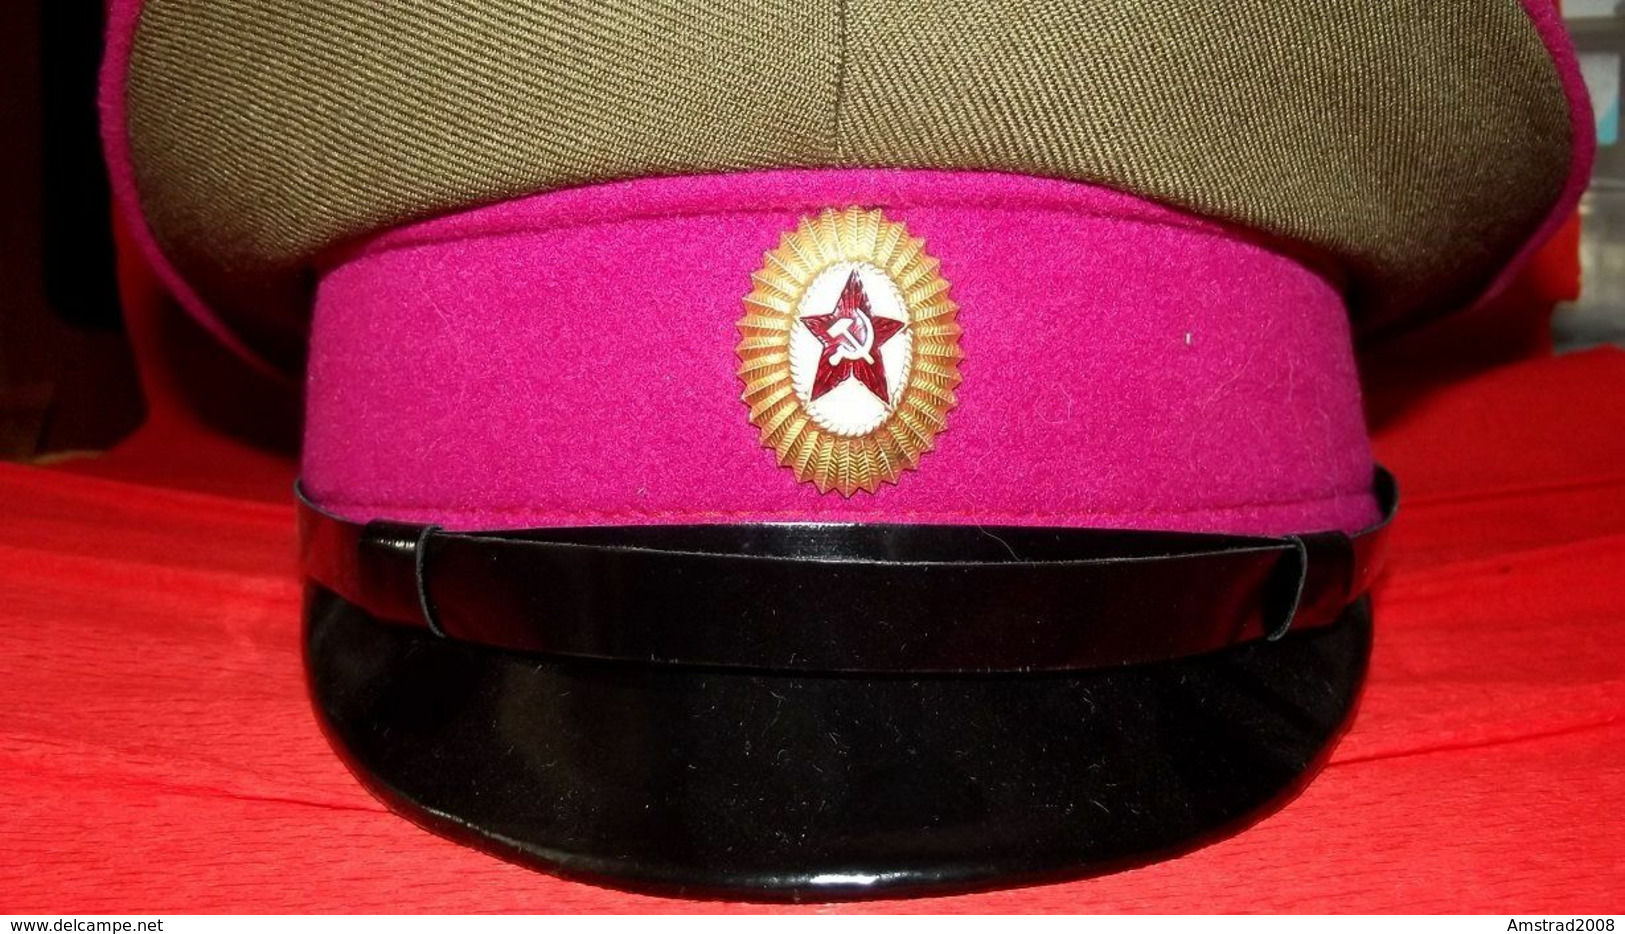 URSS CCCP BERRETTO MILITARE RUSSA DELL'ESERCITO SOVIETICO RUSSIA  MILITARY RUSSIAN CAP UNIFORM MILITAIRE KGB LENIN KL